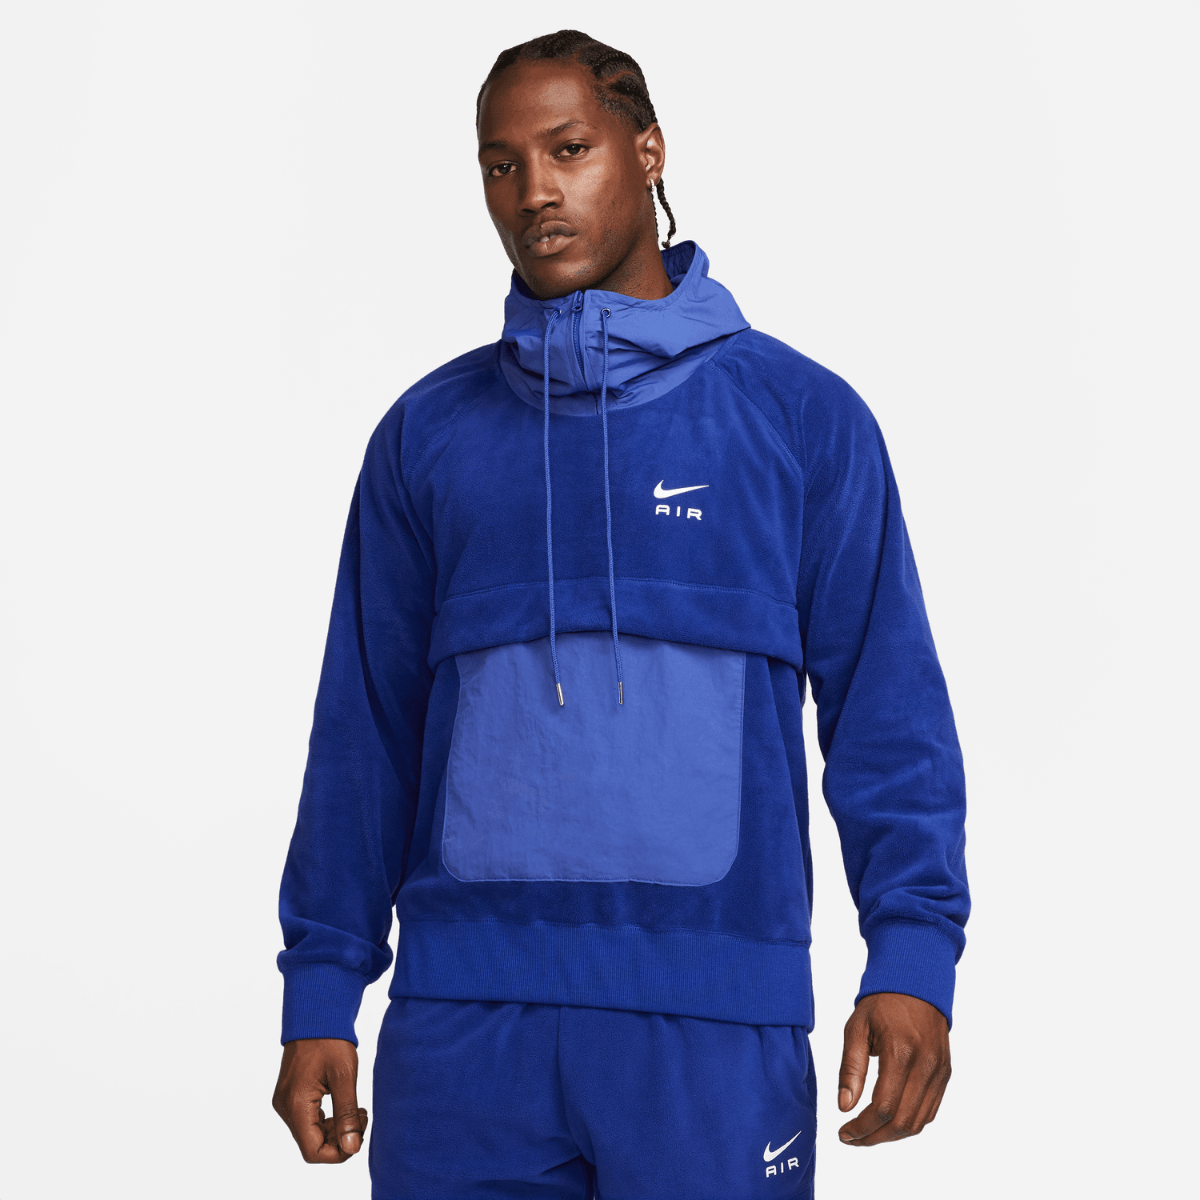 Sweat à capuche Nike - Bleu